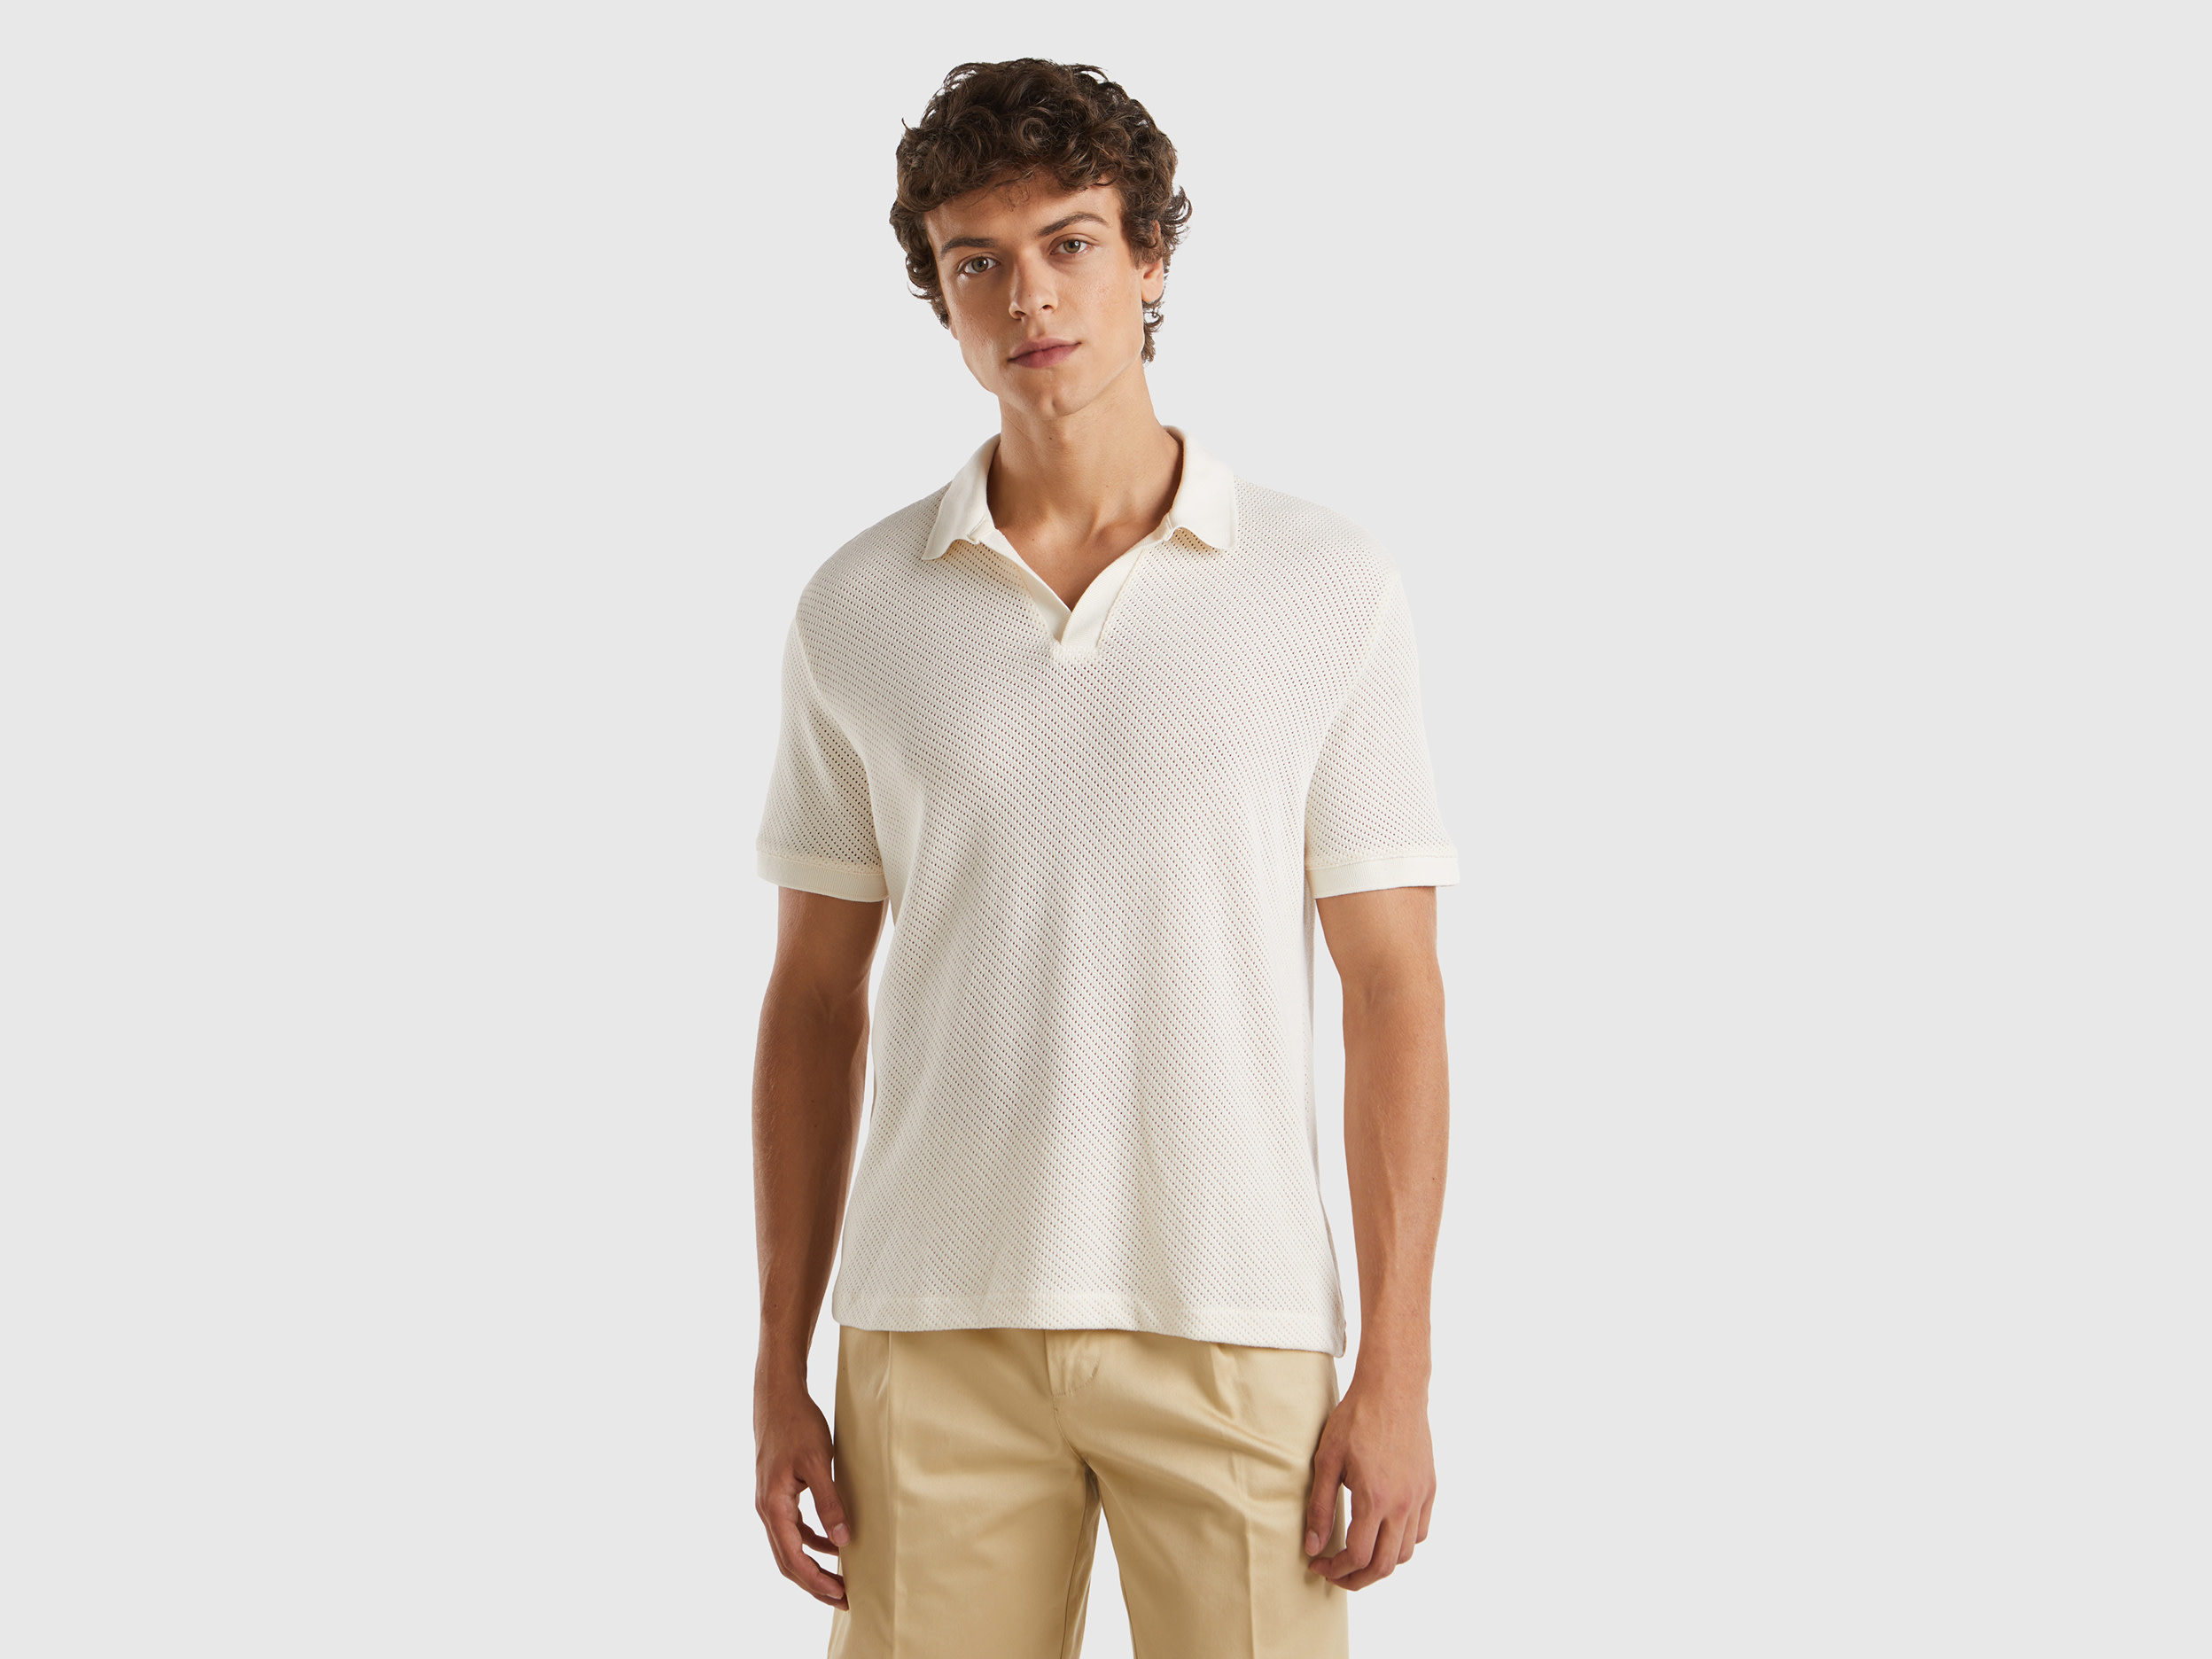 Image of Benetton, Perforated Cotton Polo Shirt, size XXL, Creamy White, Men